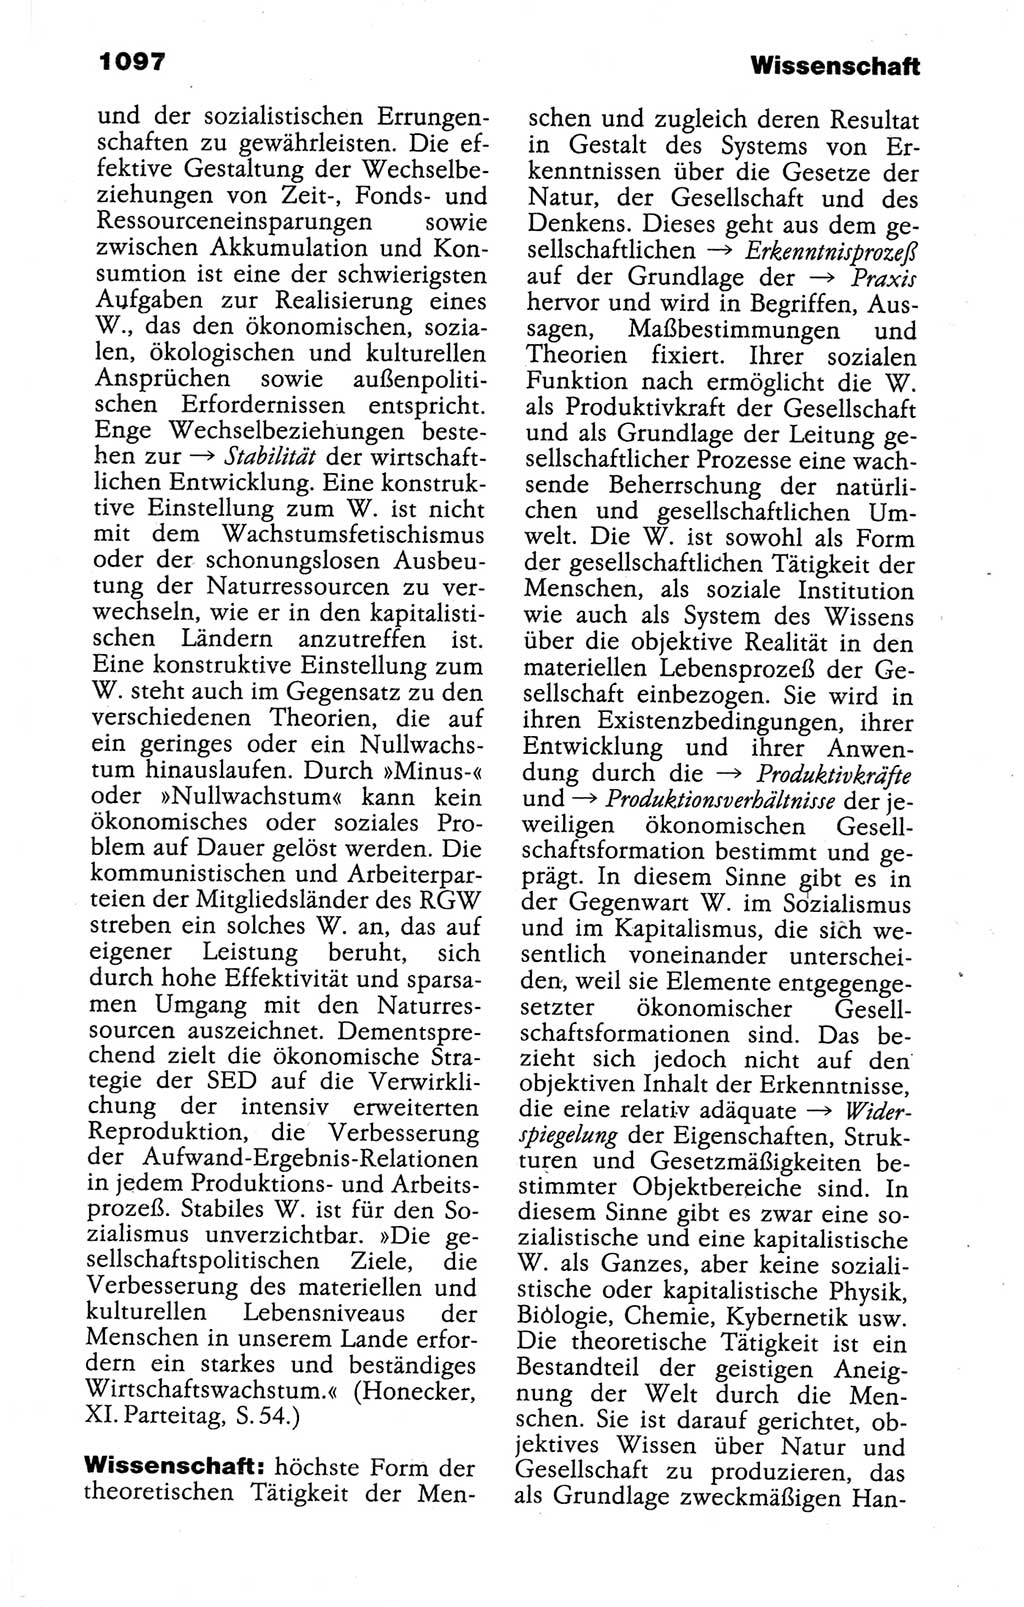 Kleines politisches Wörterbuch [Deutsche Demokratische Republik (DDR)] 1988, Seite 1097 (Kl. pol. Wb. DDR 1988, S. 1097)